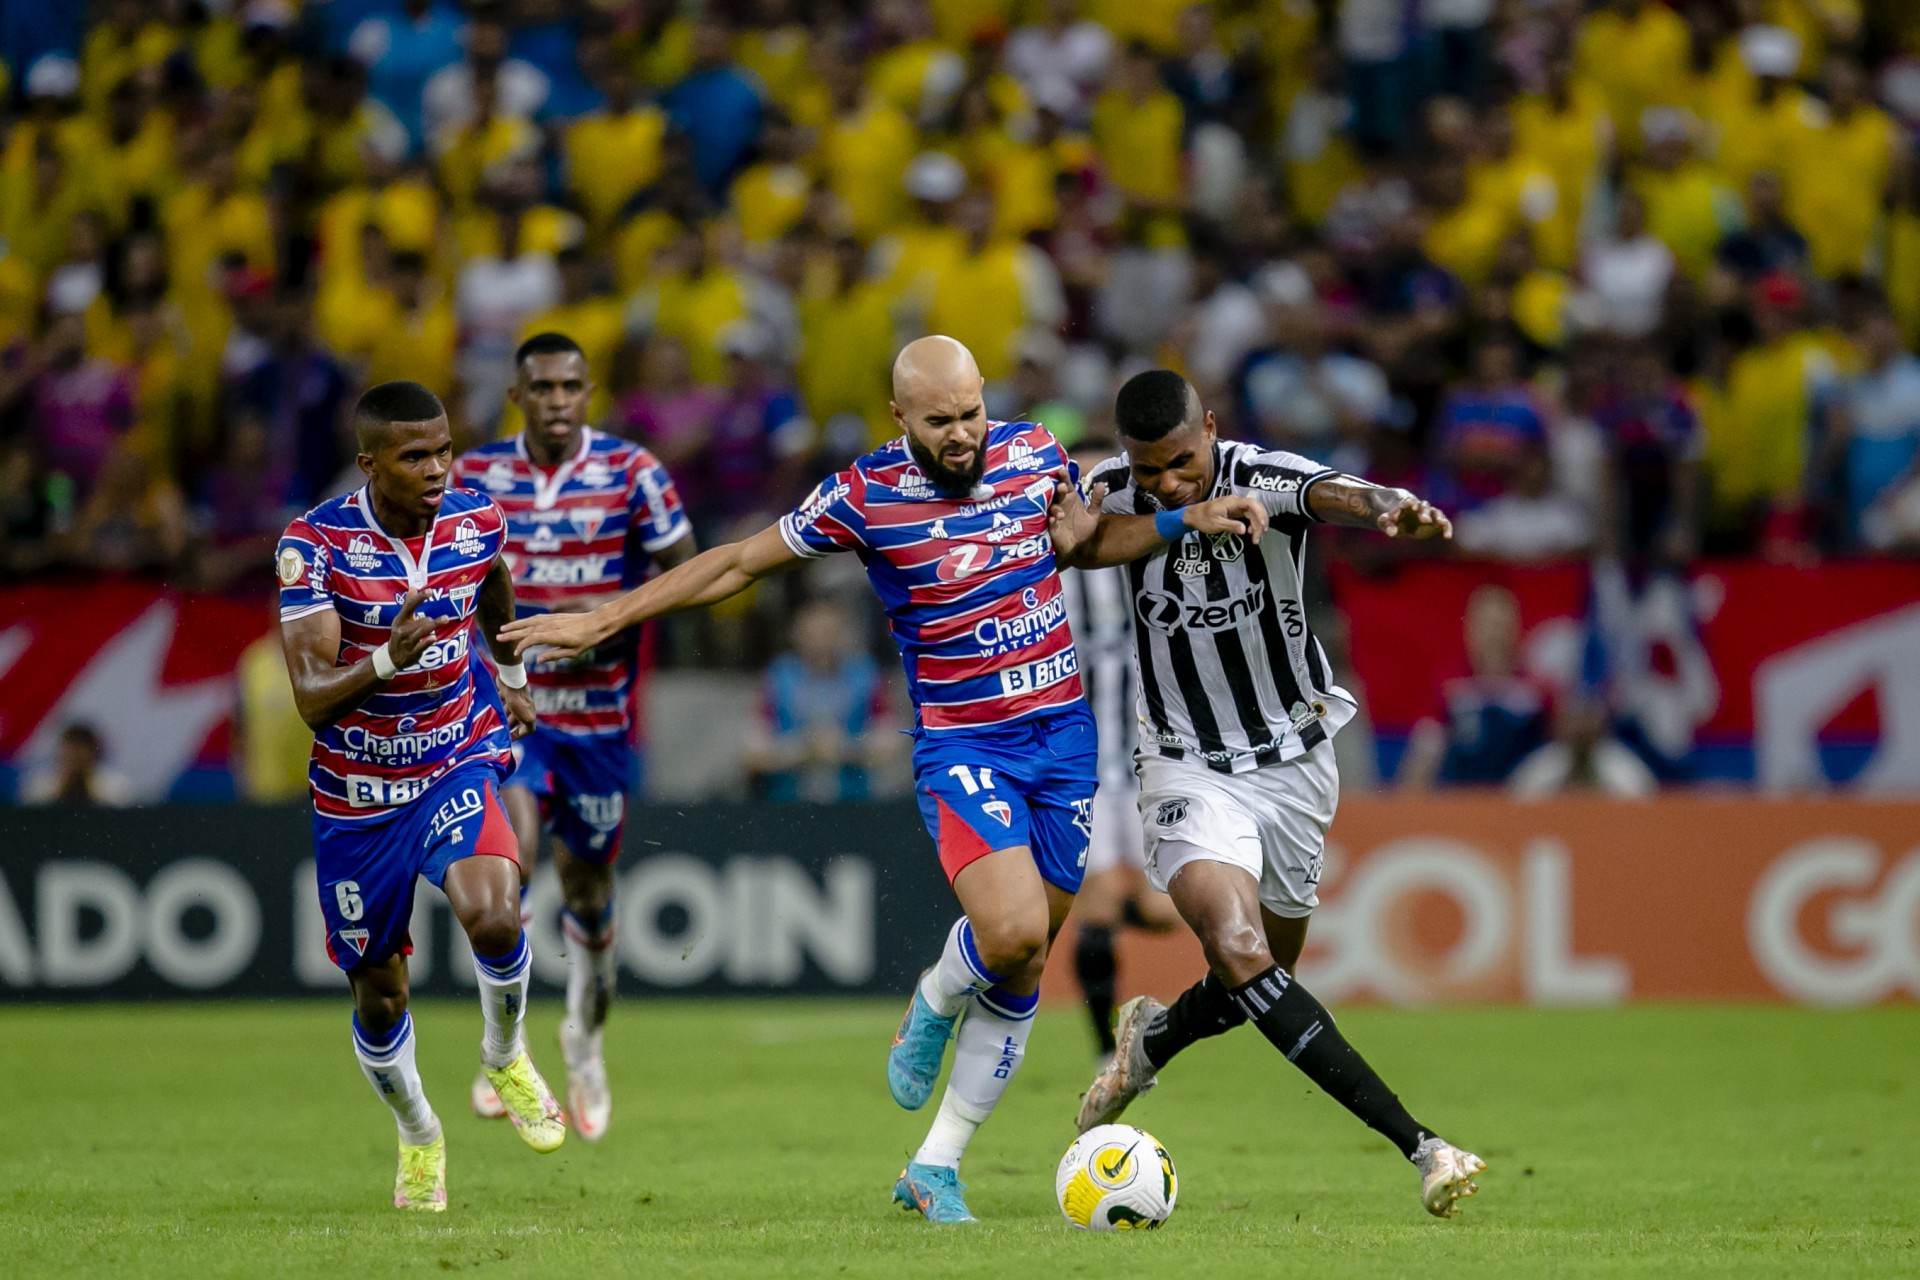 Rivais lutam por vaga nas quartas de final (Foto: Aurelio Alves)